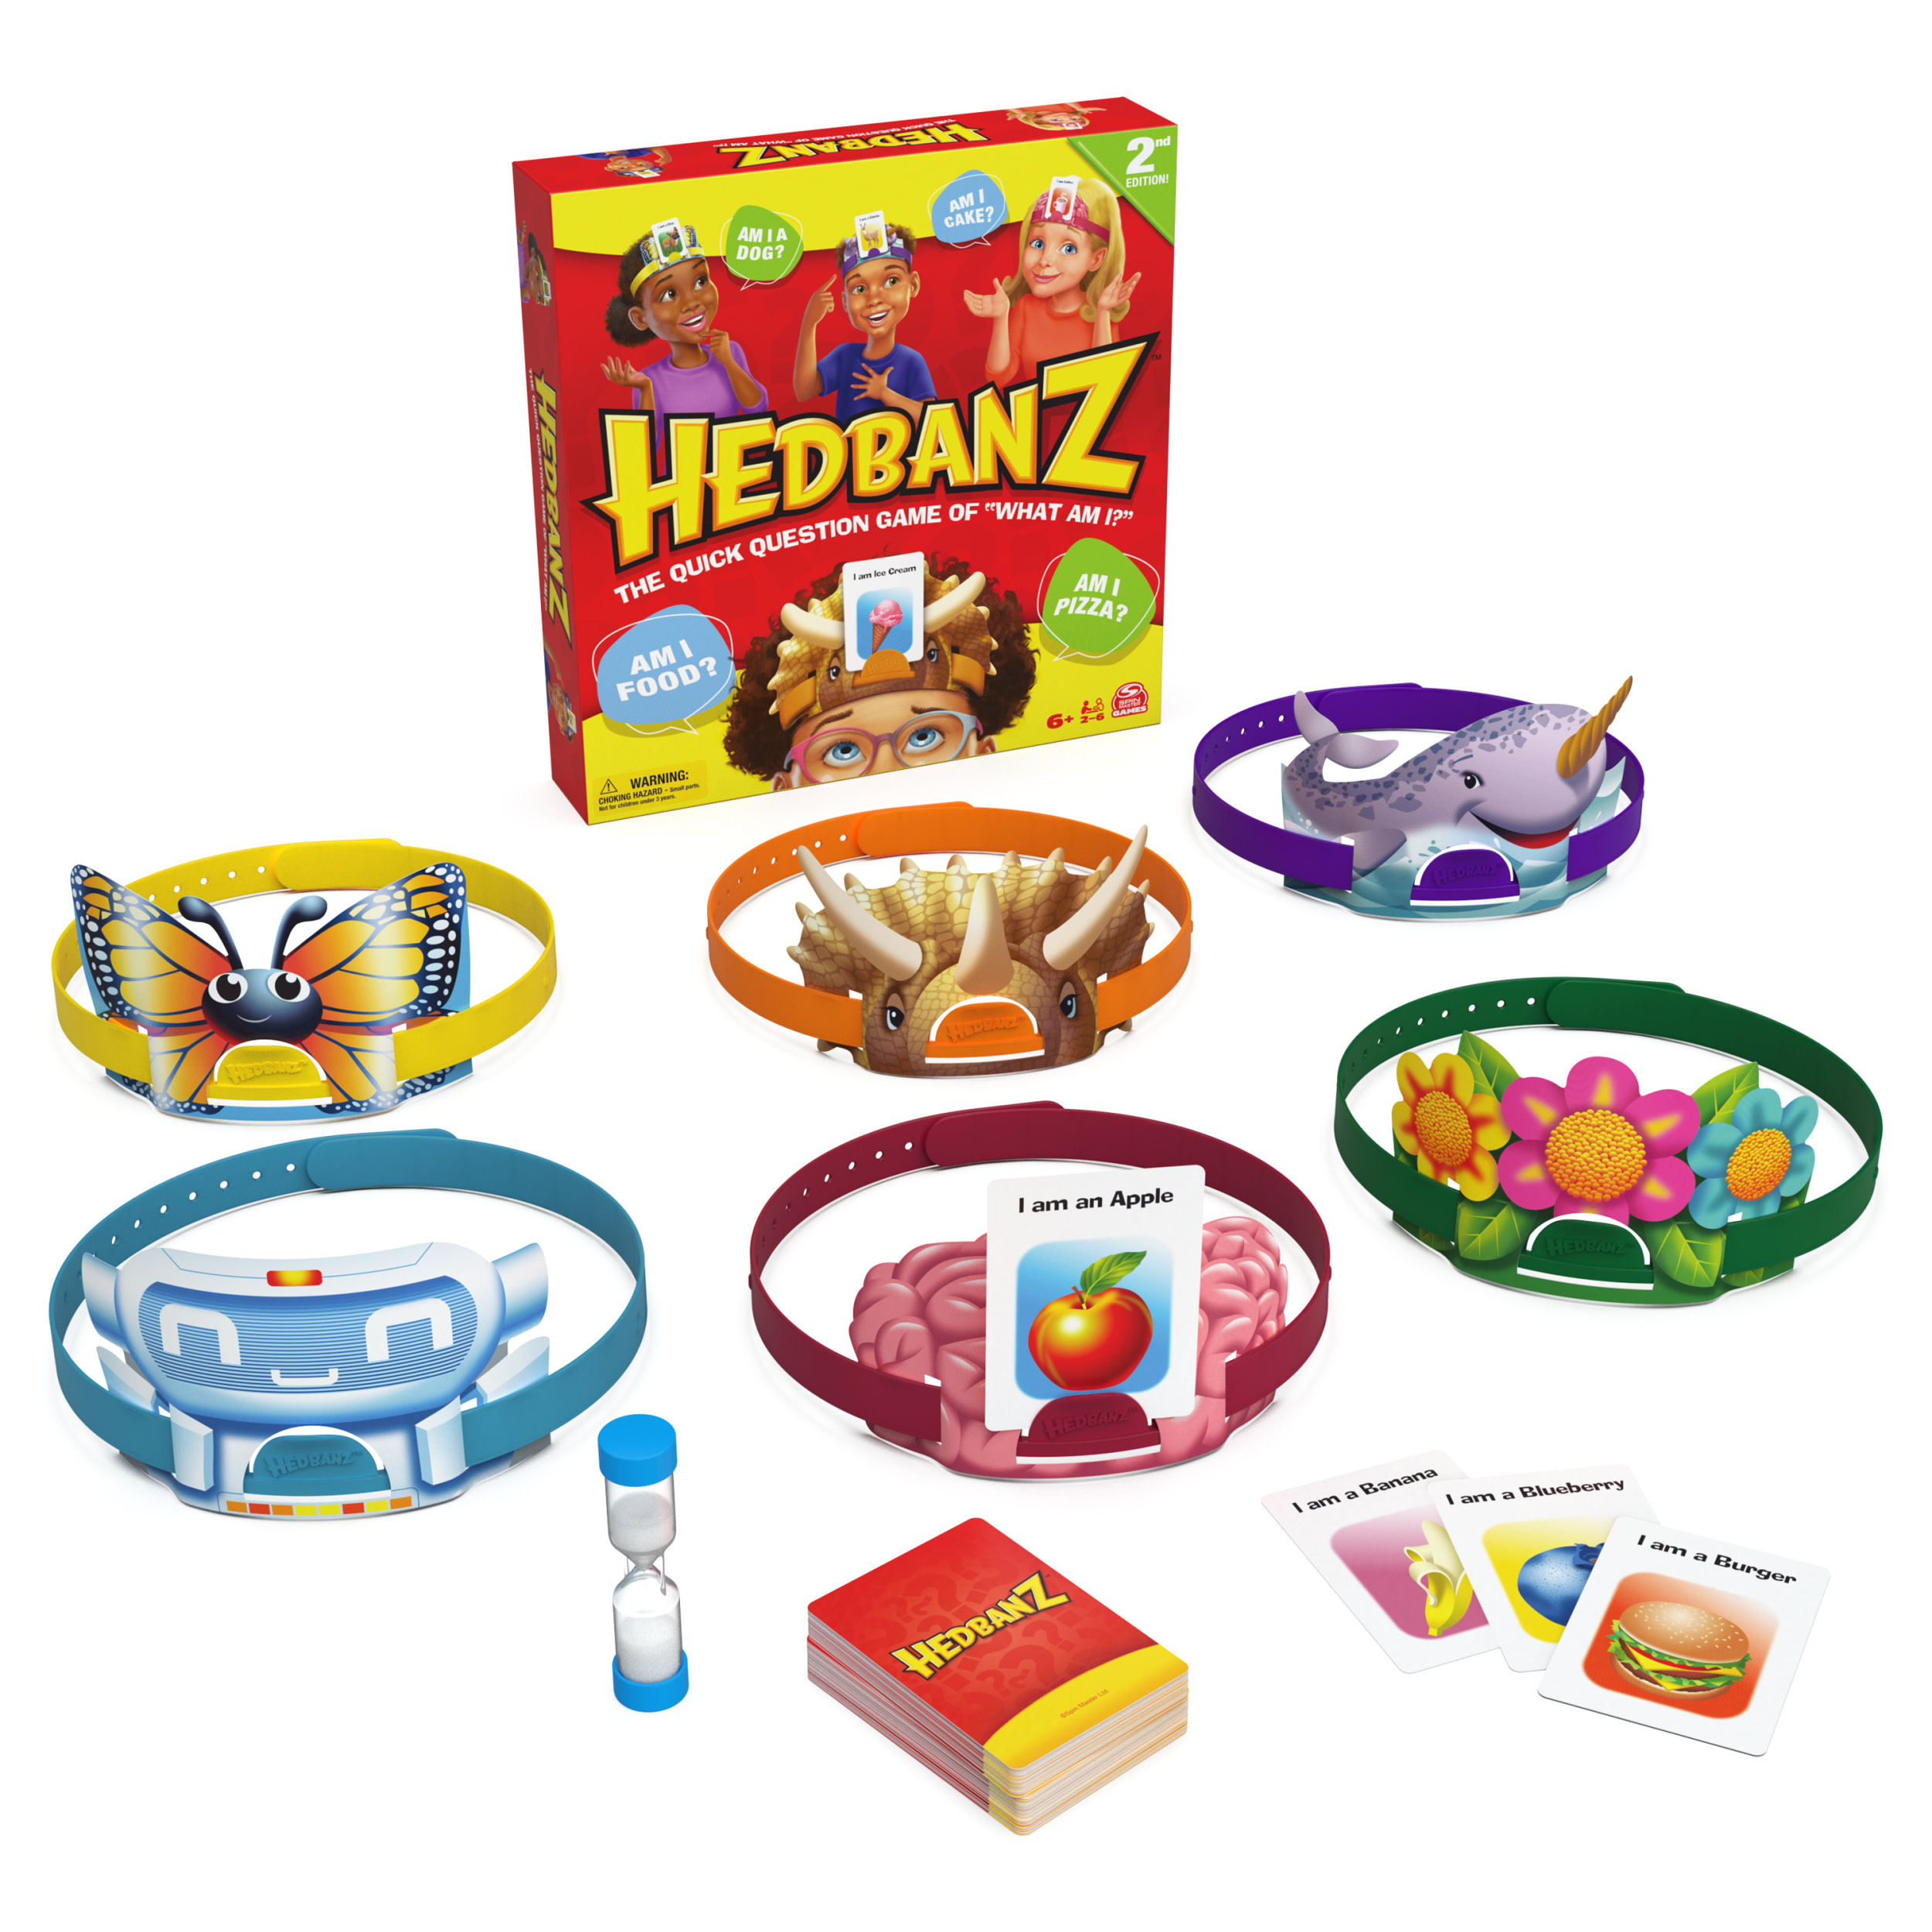 hedbanz family juego de mesa ( spin master - 6070481 )